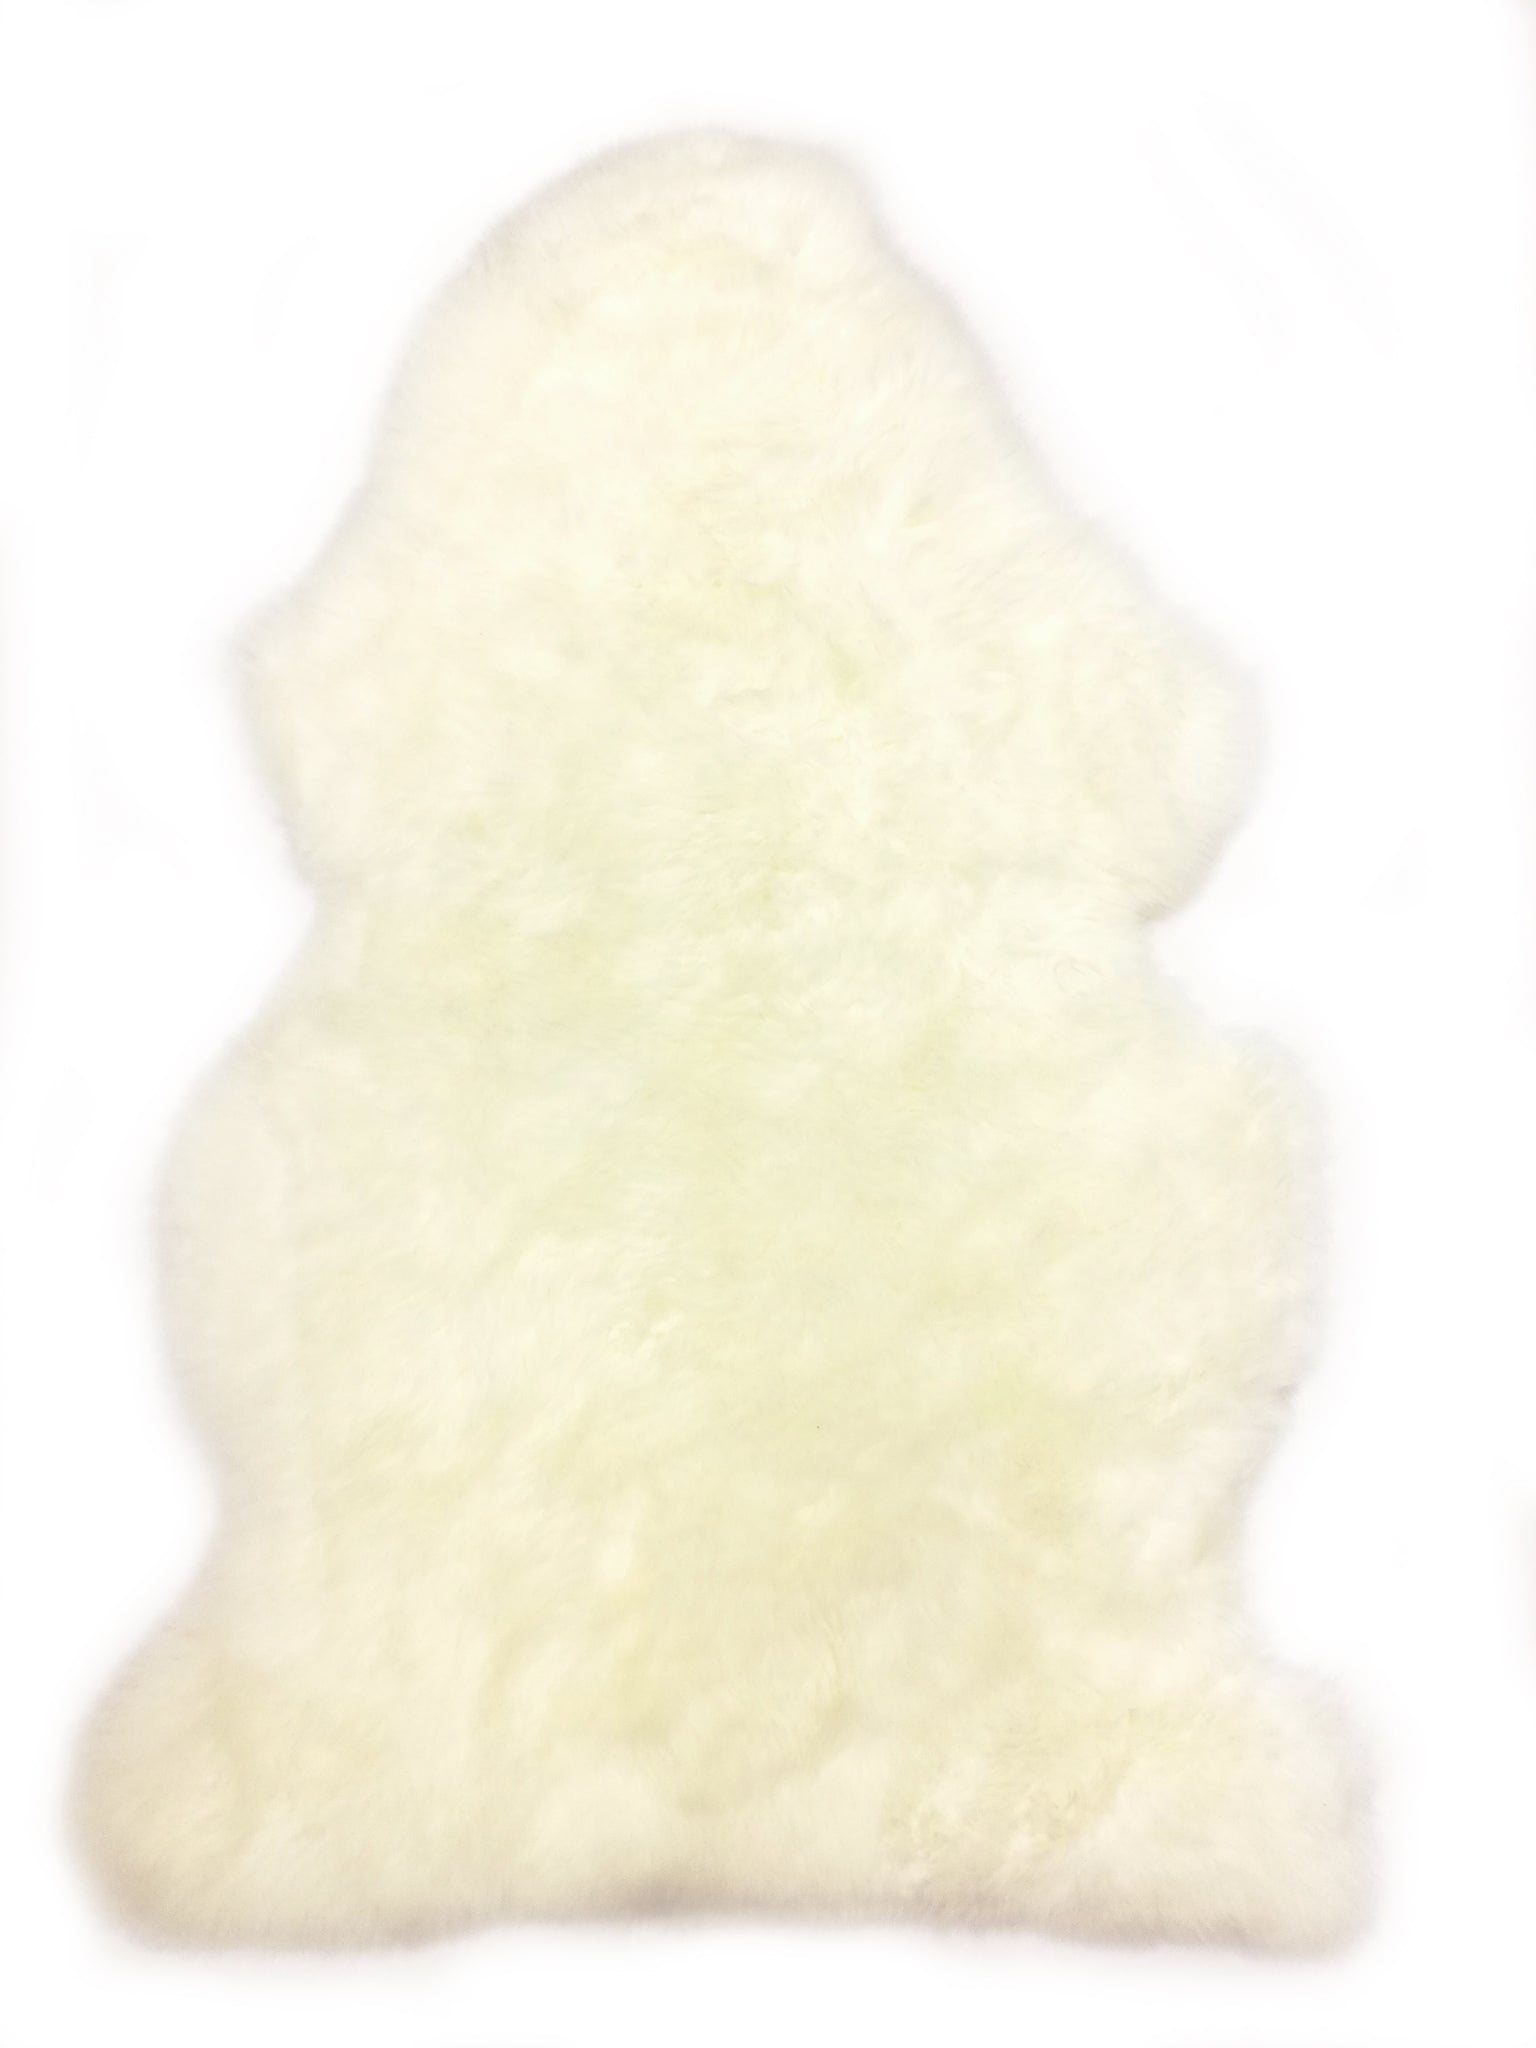 SuperPremium Schaffell extra groß, weiß - Schäfer Lammfelle